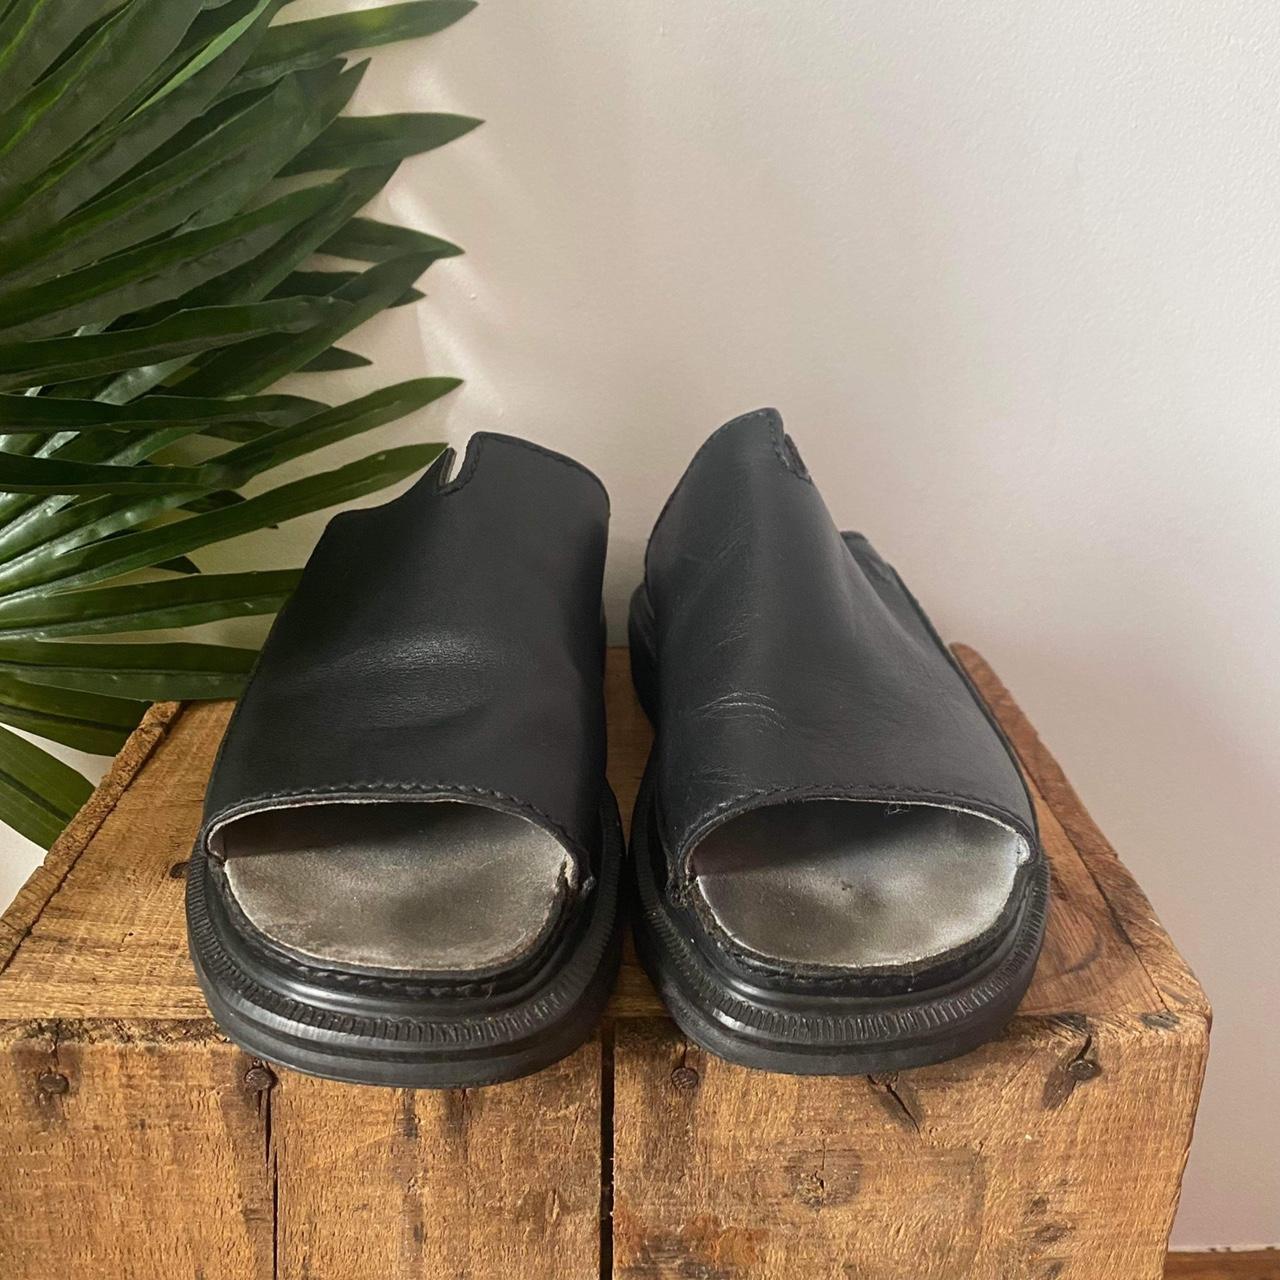 Rare Vintage Dr Marten 90s 9511 Sandals With... - Depop